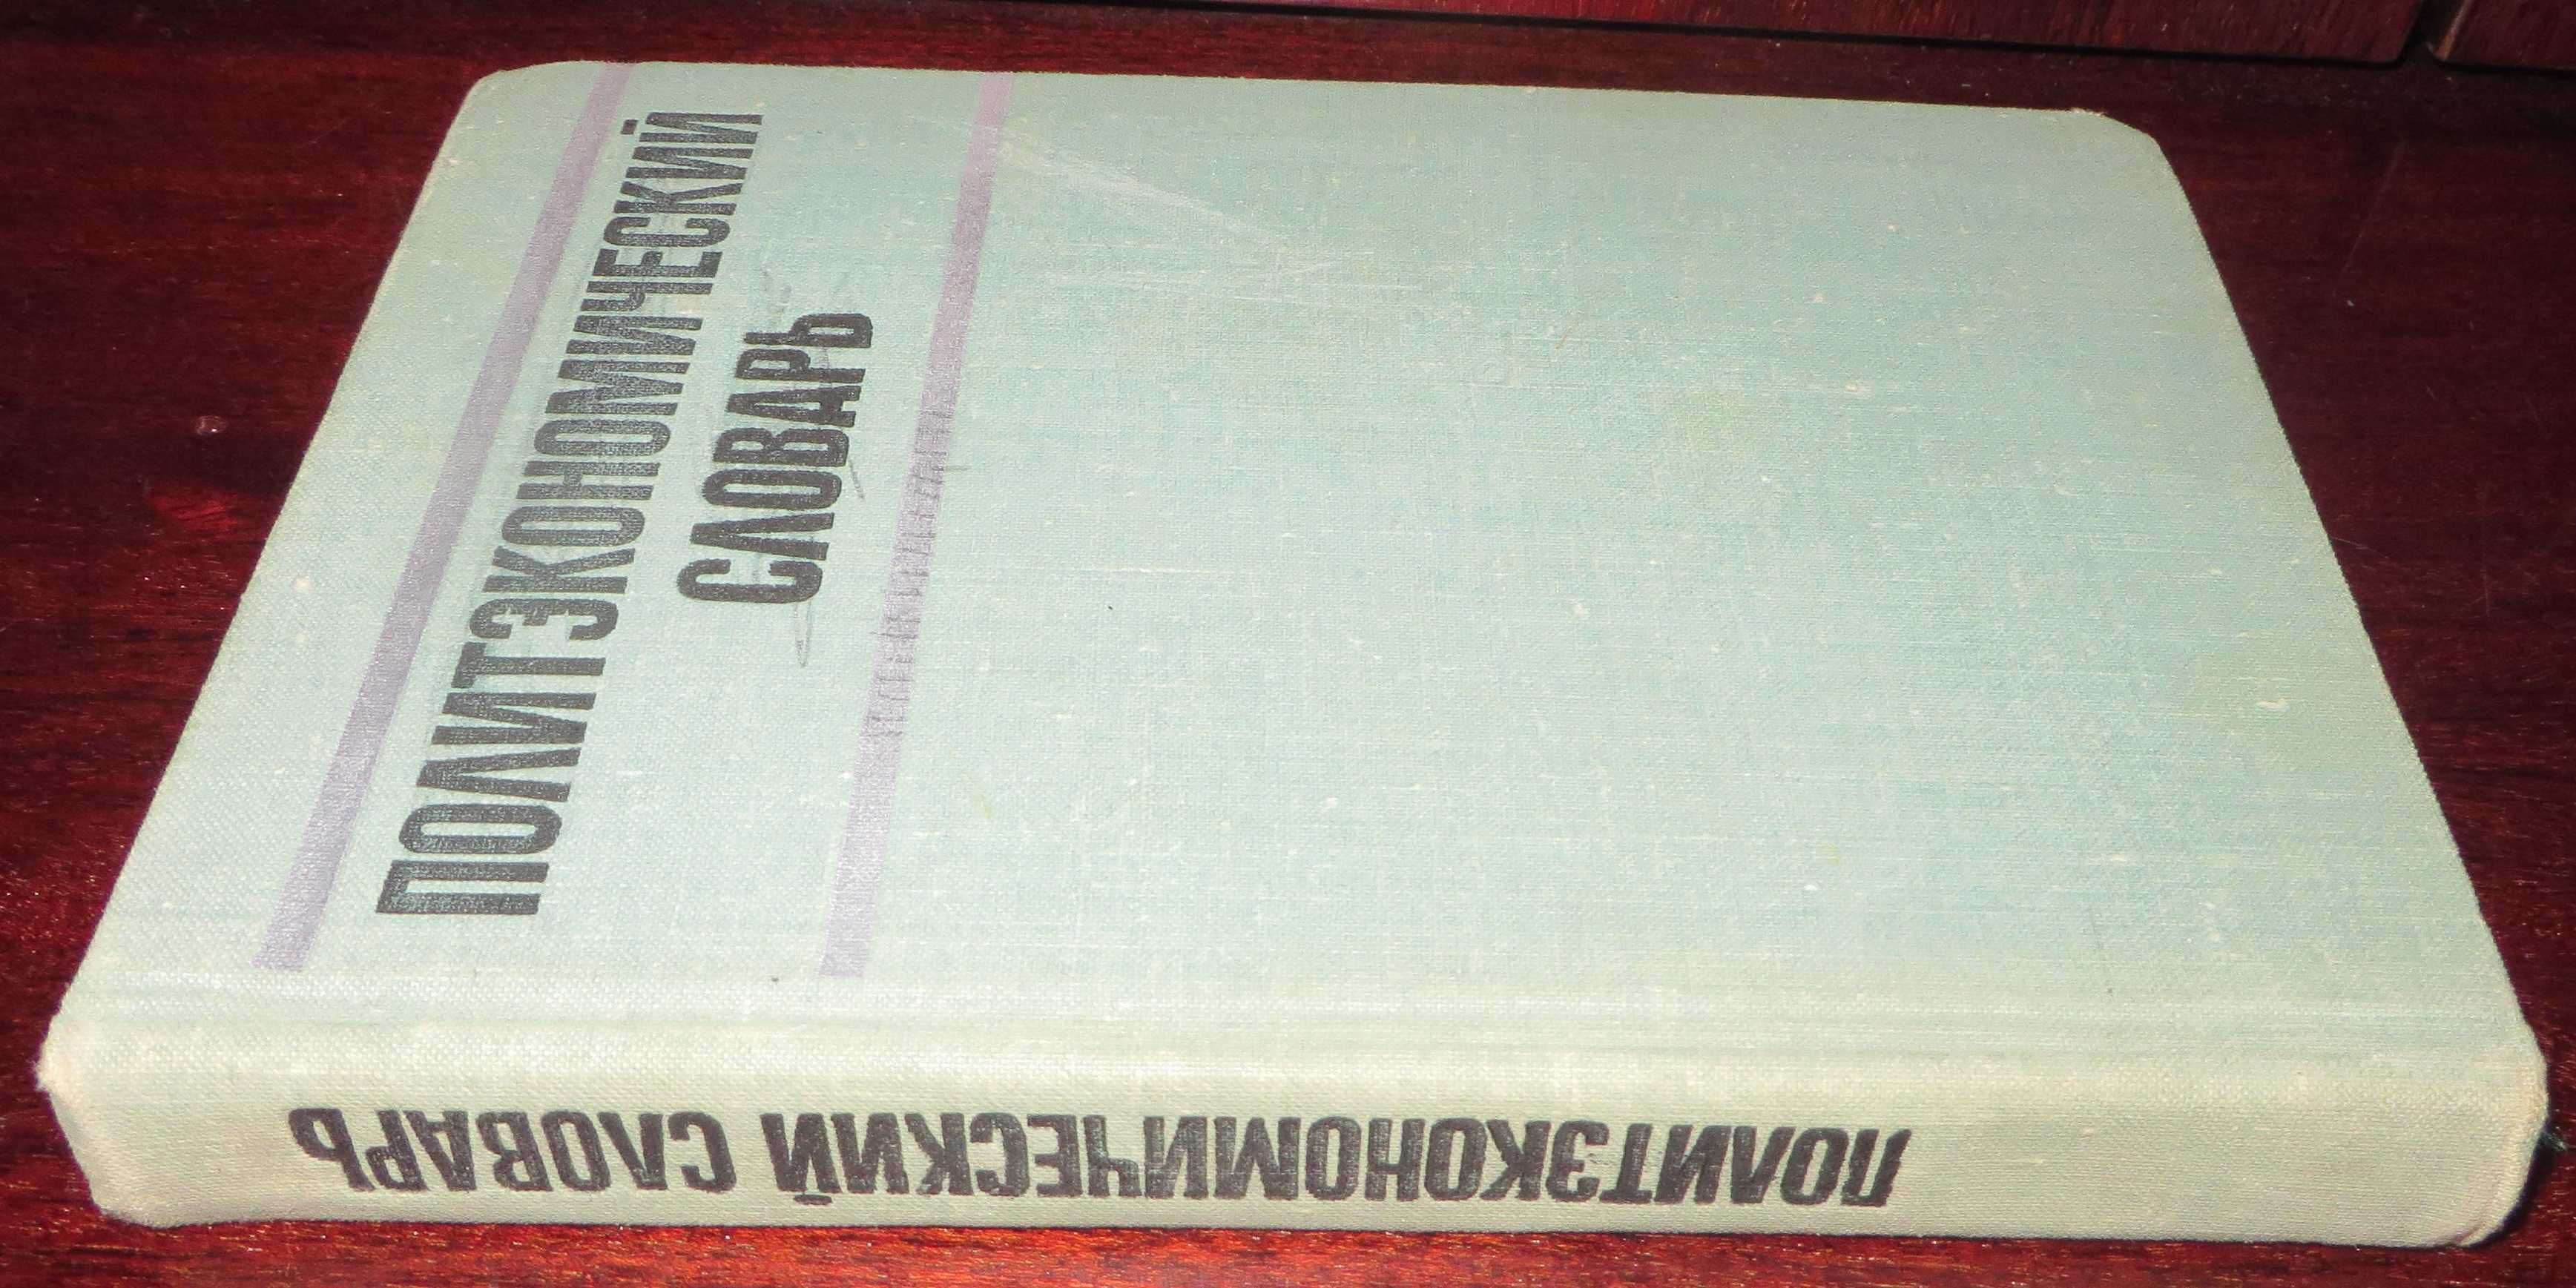 книга под ред Борисова Политэкономический словарь Москва 1972 г